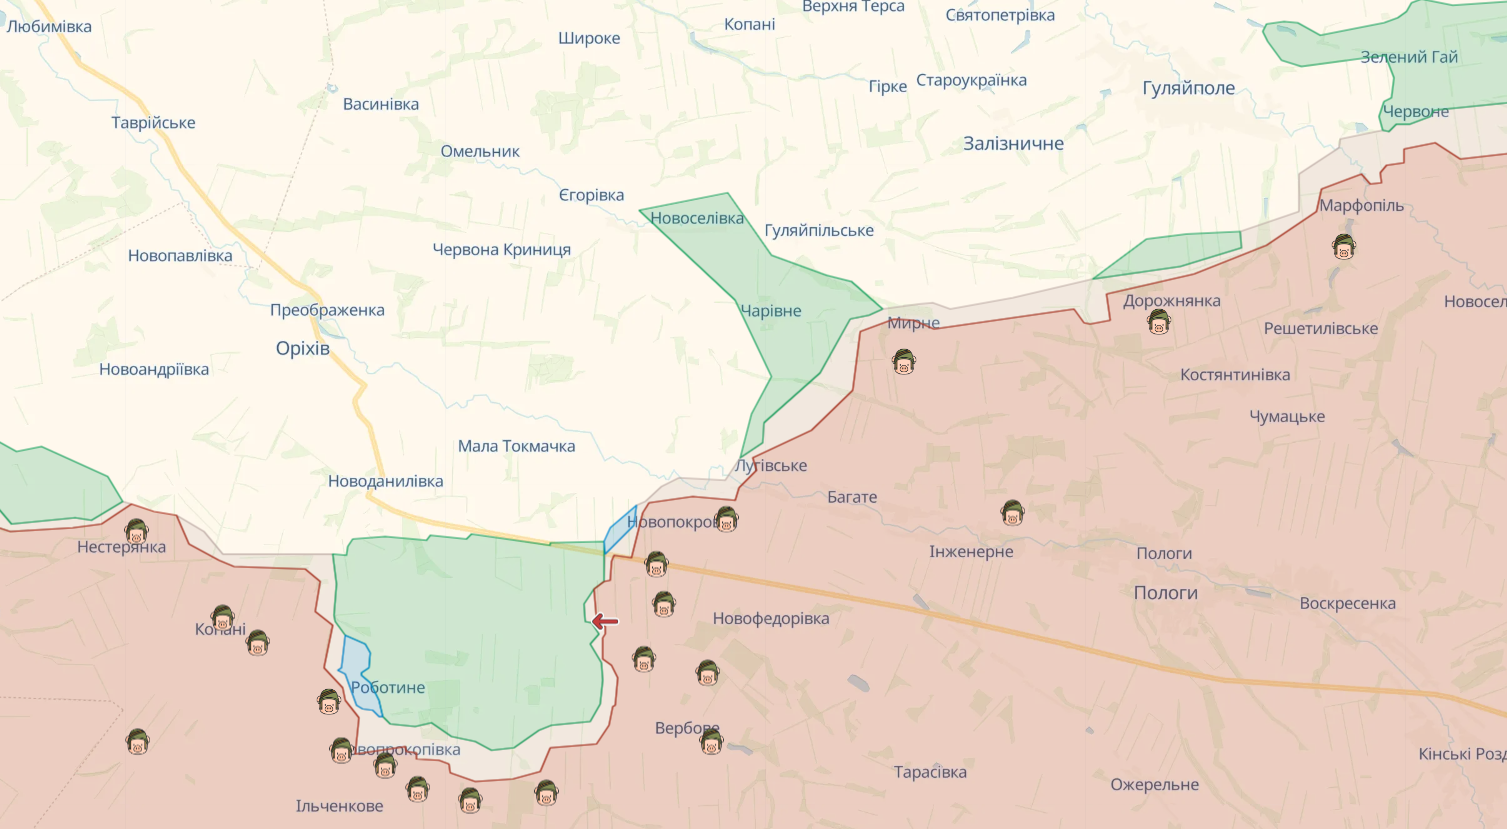 Сили оборони надалі утримують зайняті позиції на лівобережжі Дніпра, за добу на фронті відбулося 97 бойових зіткнень – Генштаб